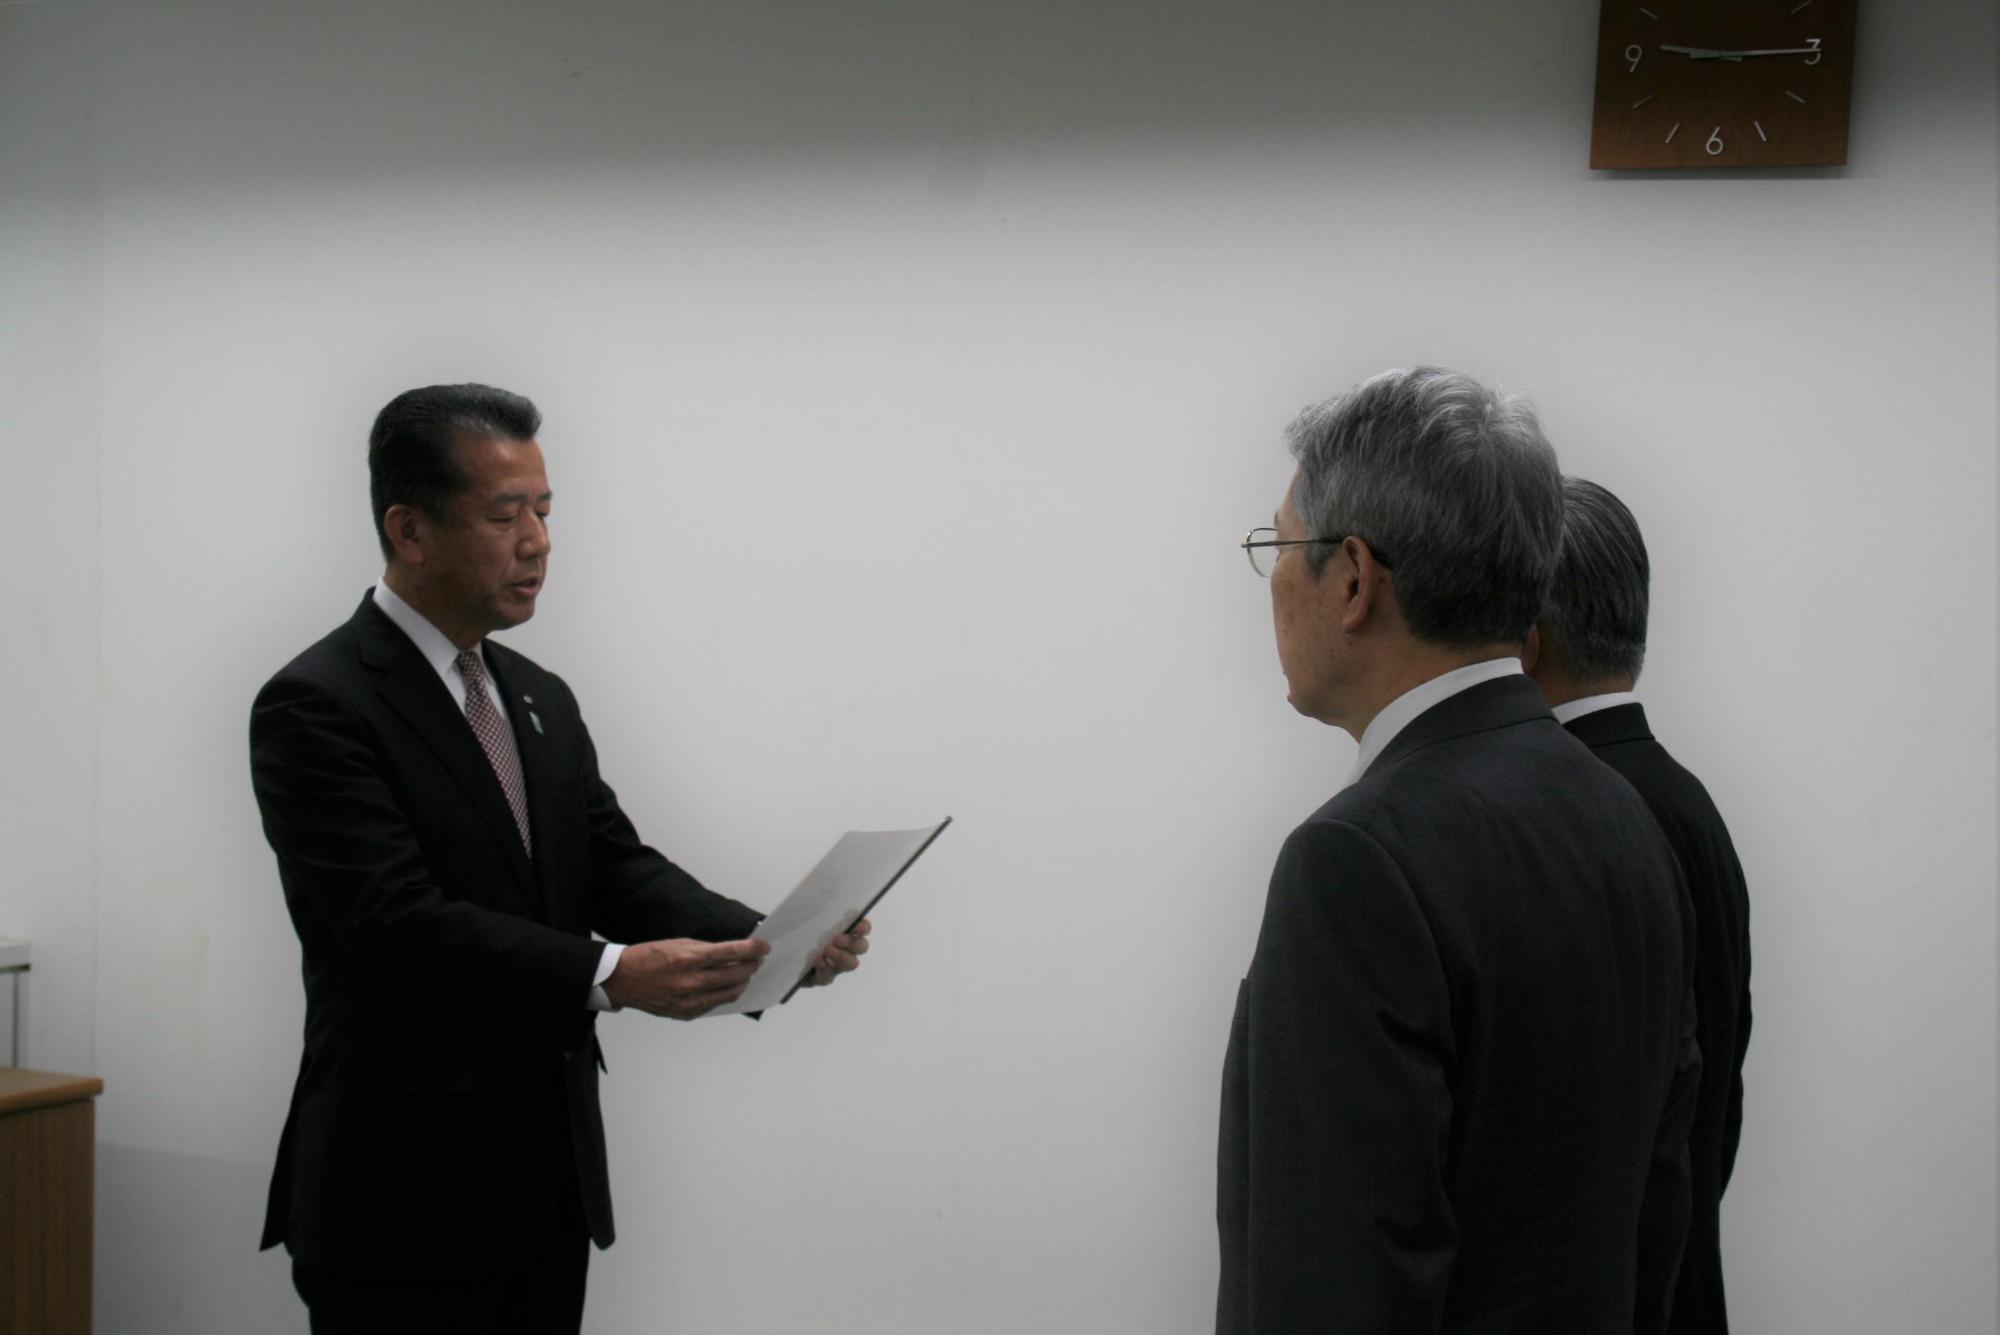 文書を読み上げる村長と向かい合う位置に立って聞いている山本理事、三浦所長の写真